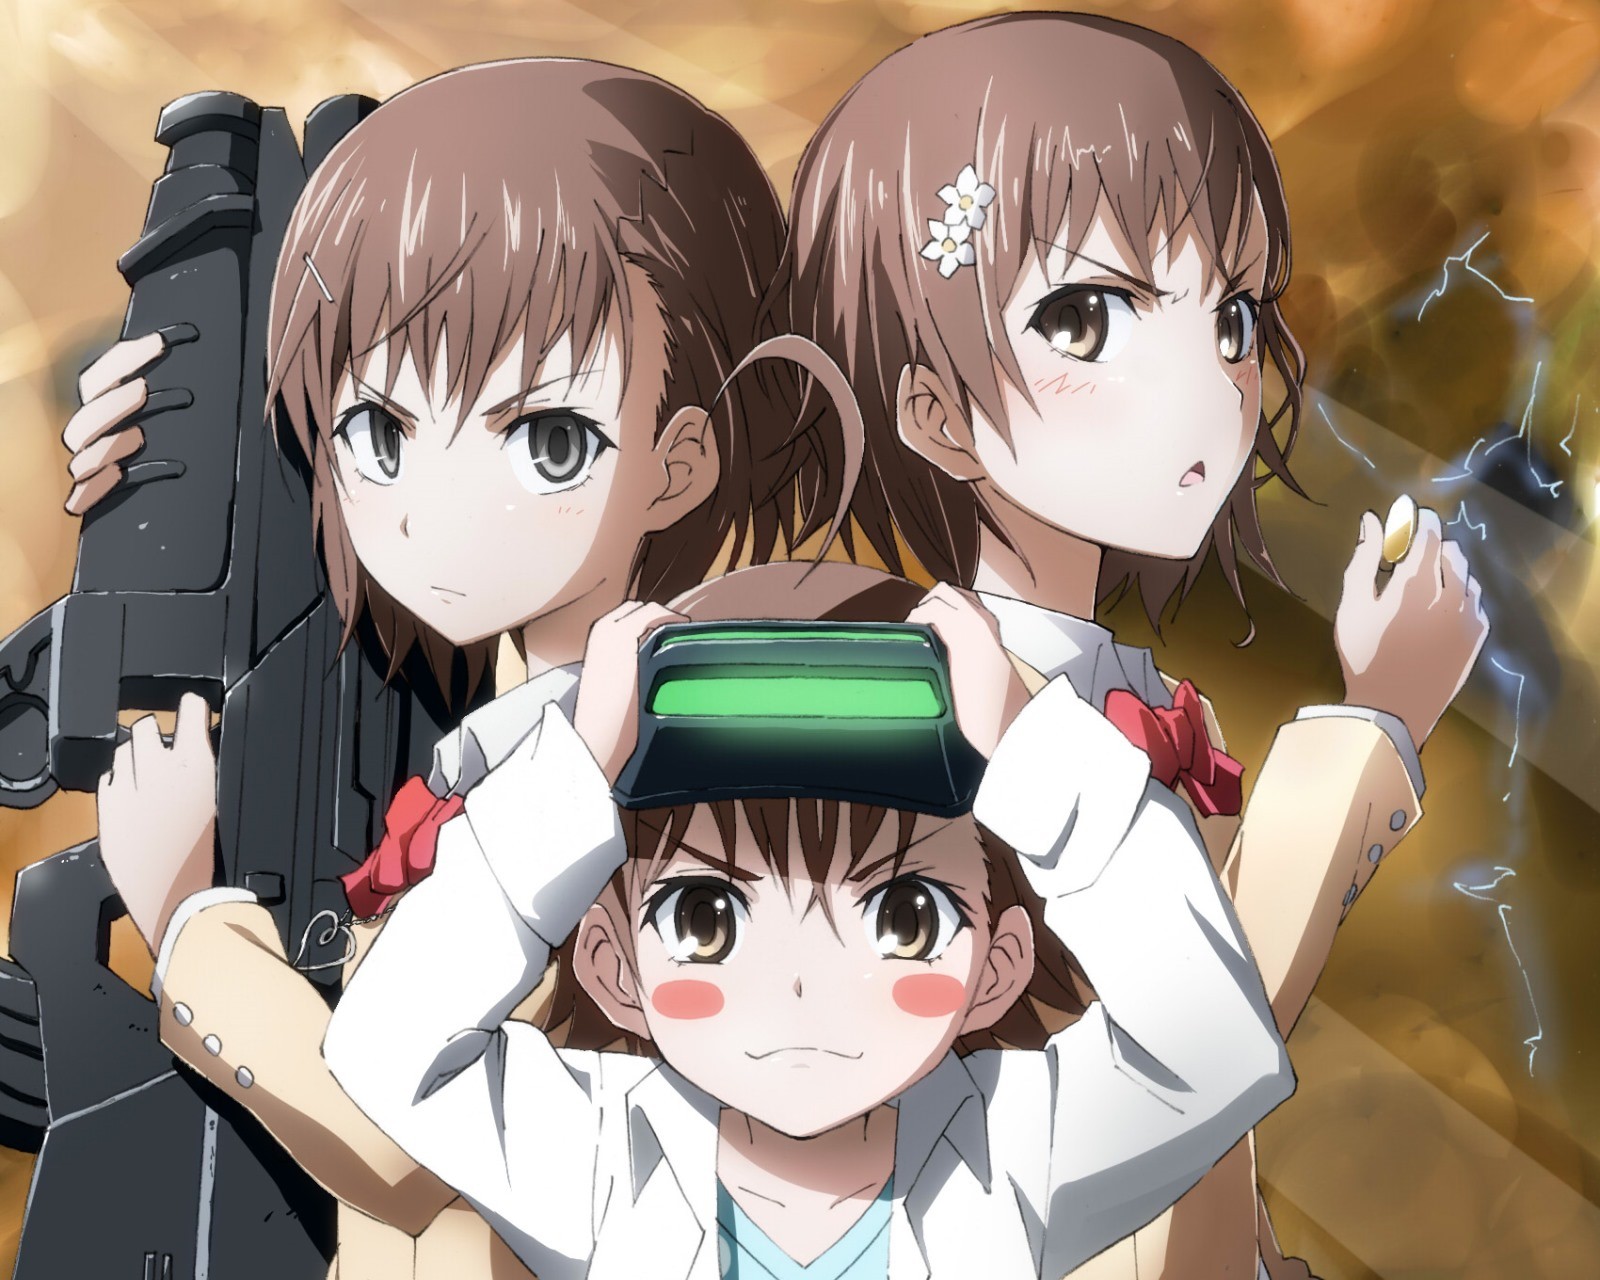 Anime Anime Girls Misaka Mikoto MiSAKA 10032 Misaka Imouto To Aru Kagaku No Railgun To Aru Majutsu N 1600x1280